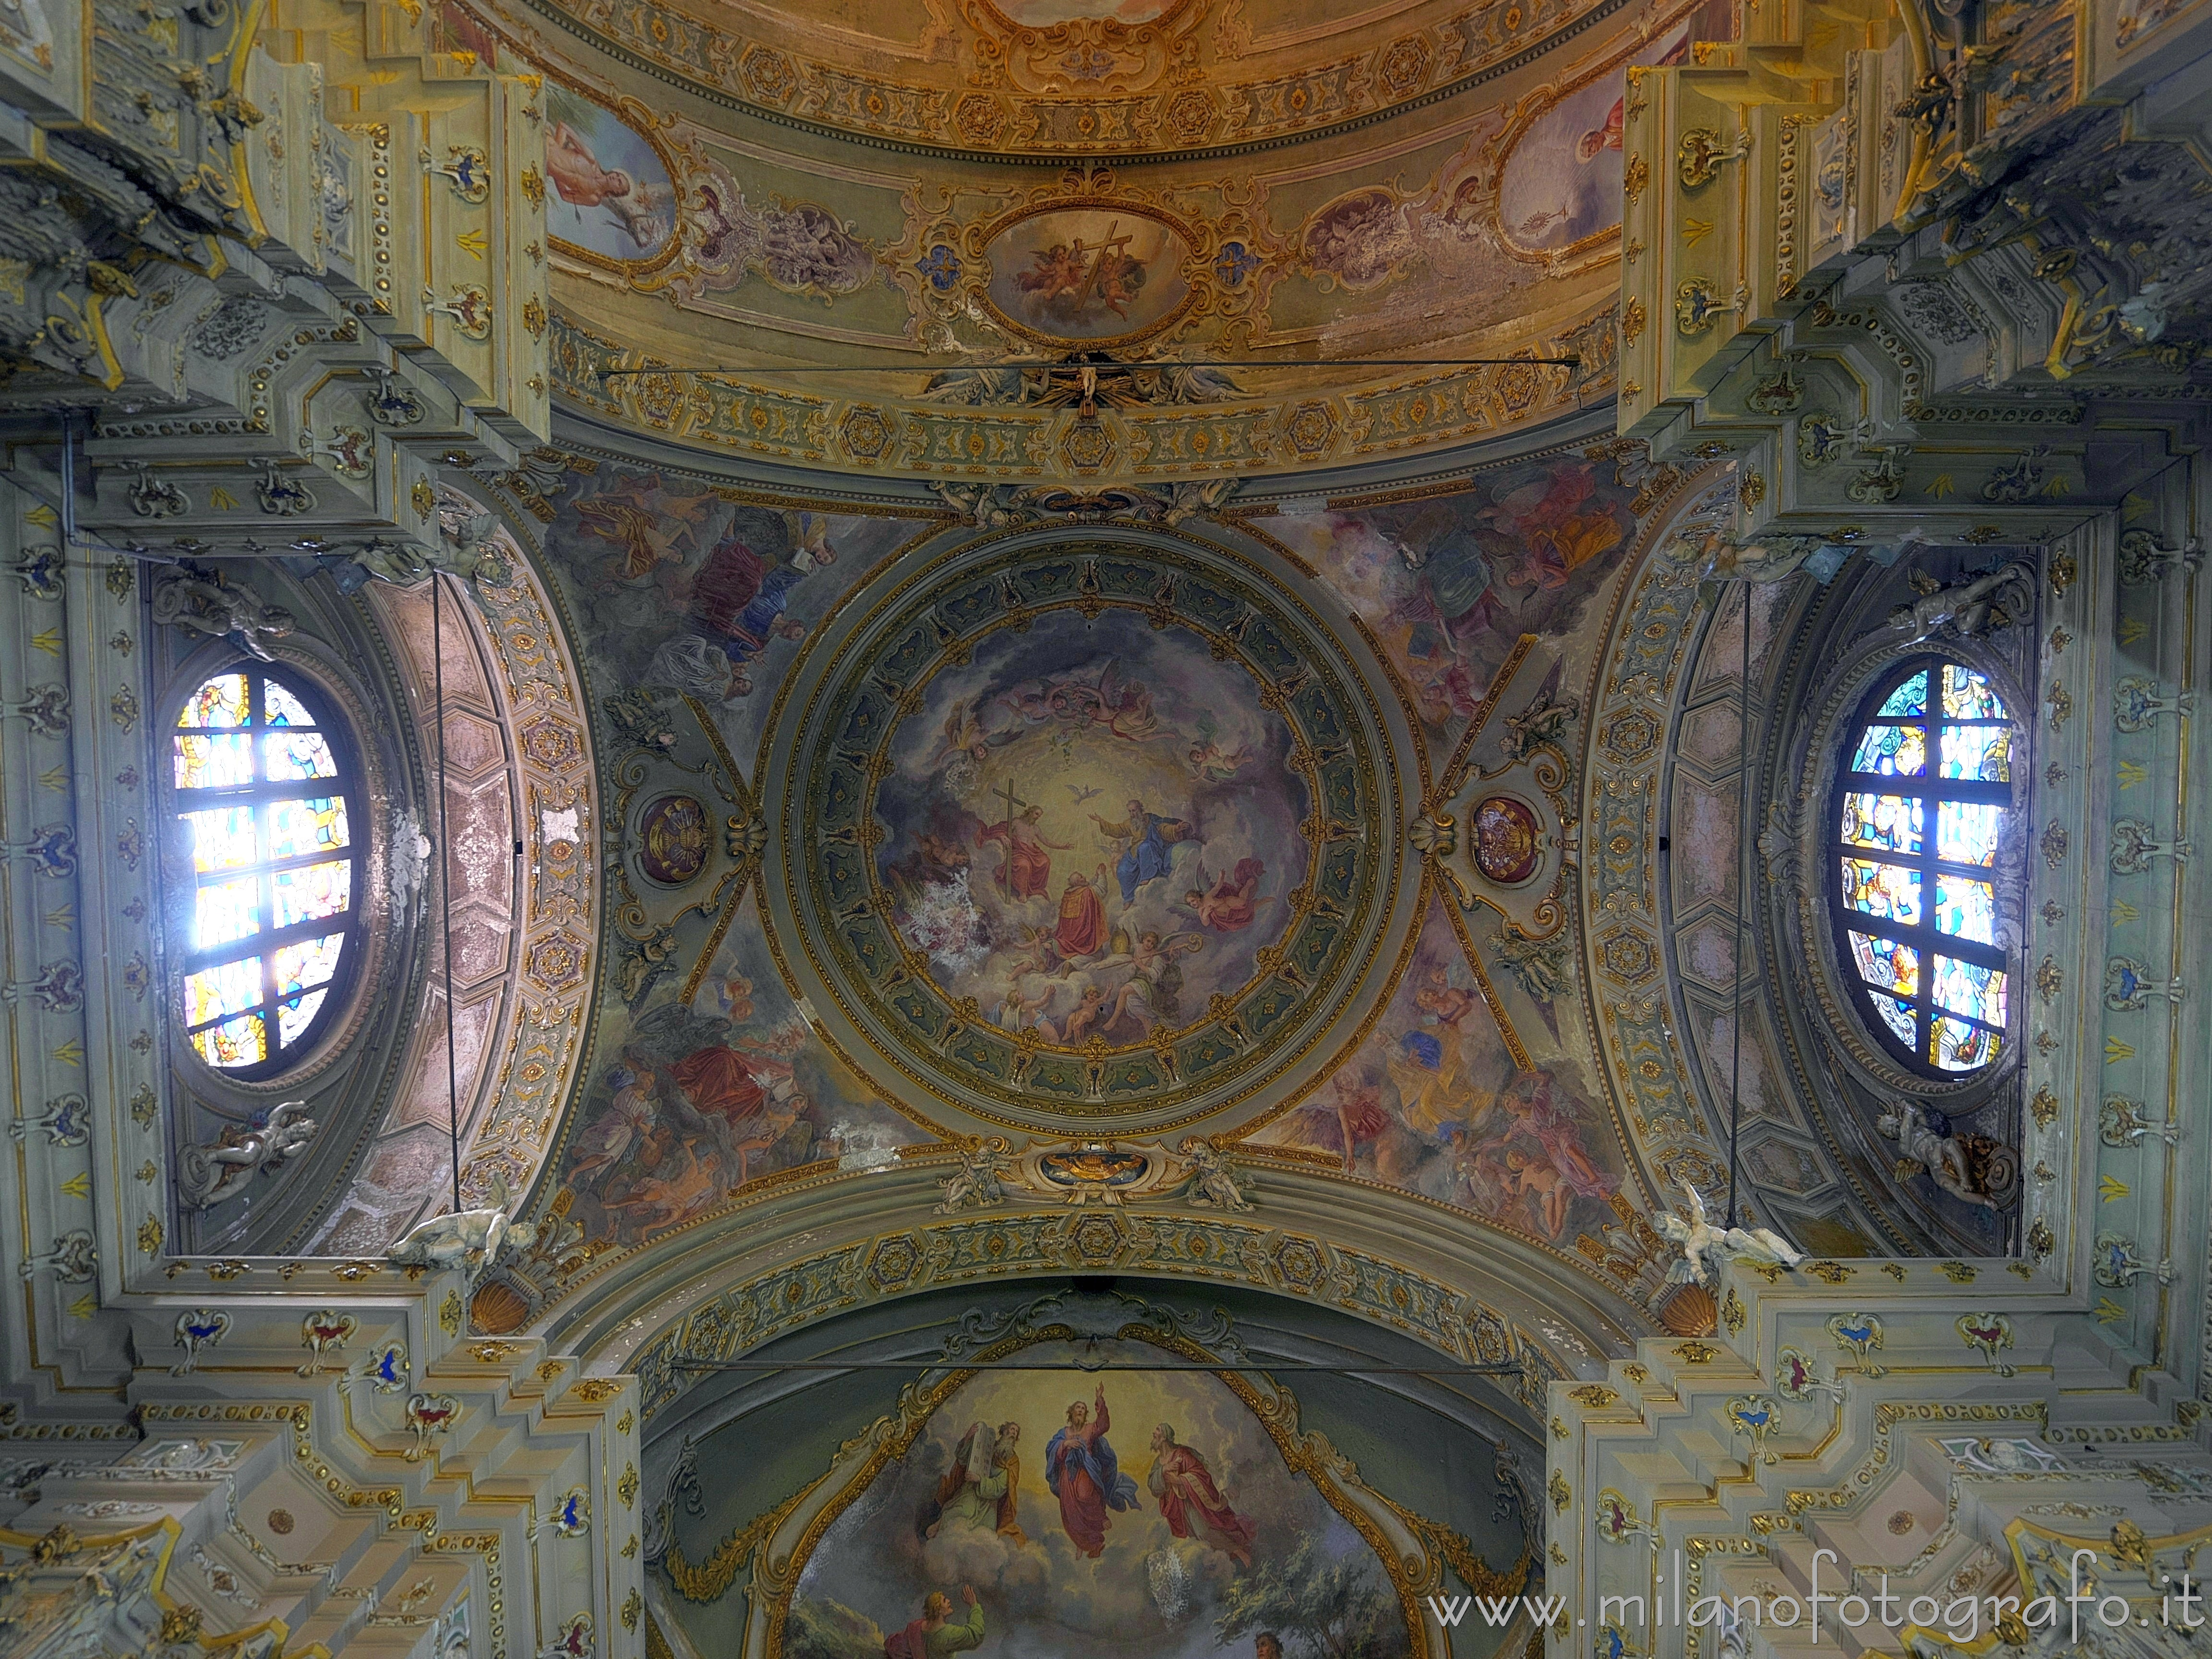 Fagnano Olona (Varese): Soffitto della crociera della Chiesa di San Gaudenzio - Fagnano Olona (Varese)